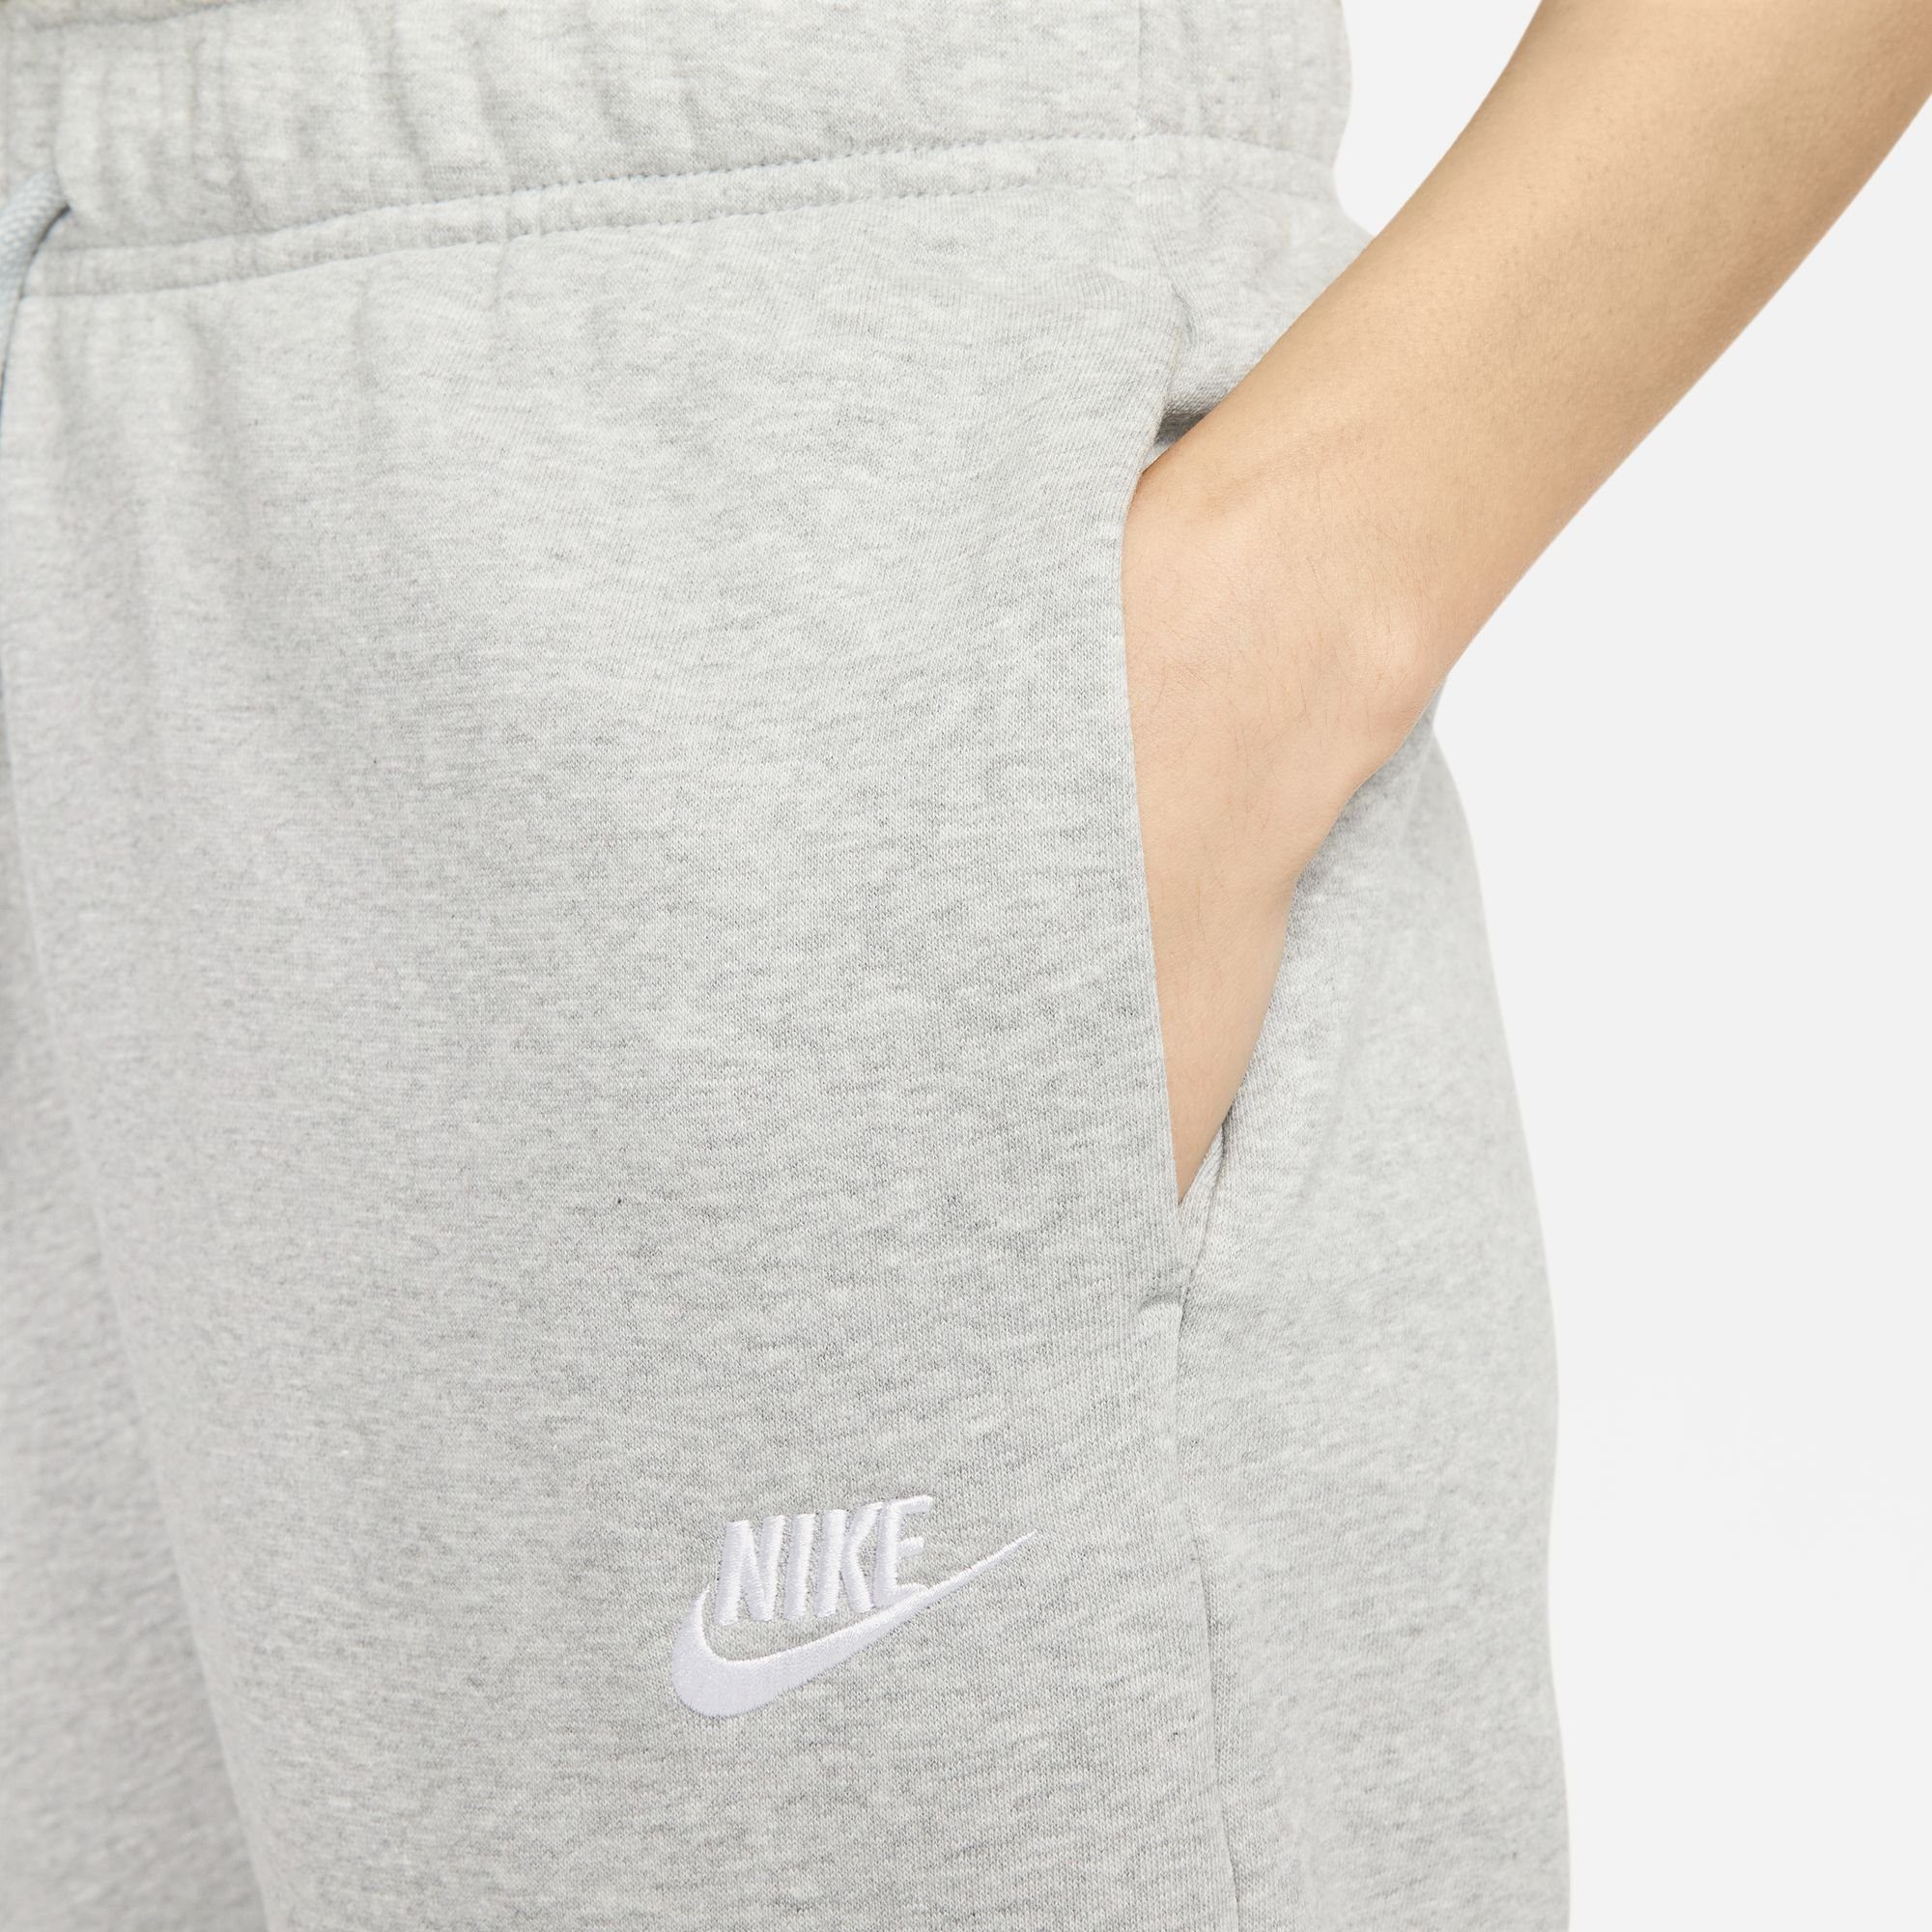 Nike Sportswear Jogginghose CLUB MID-RISE HEATHER/WHITE JOGGERS WOMEN'S DK GREY FLEECE